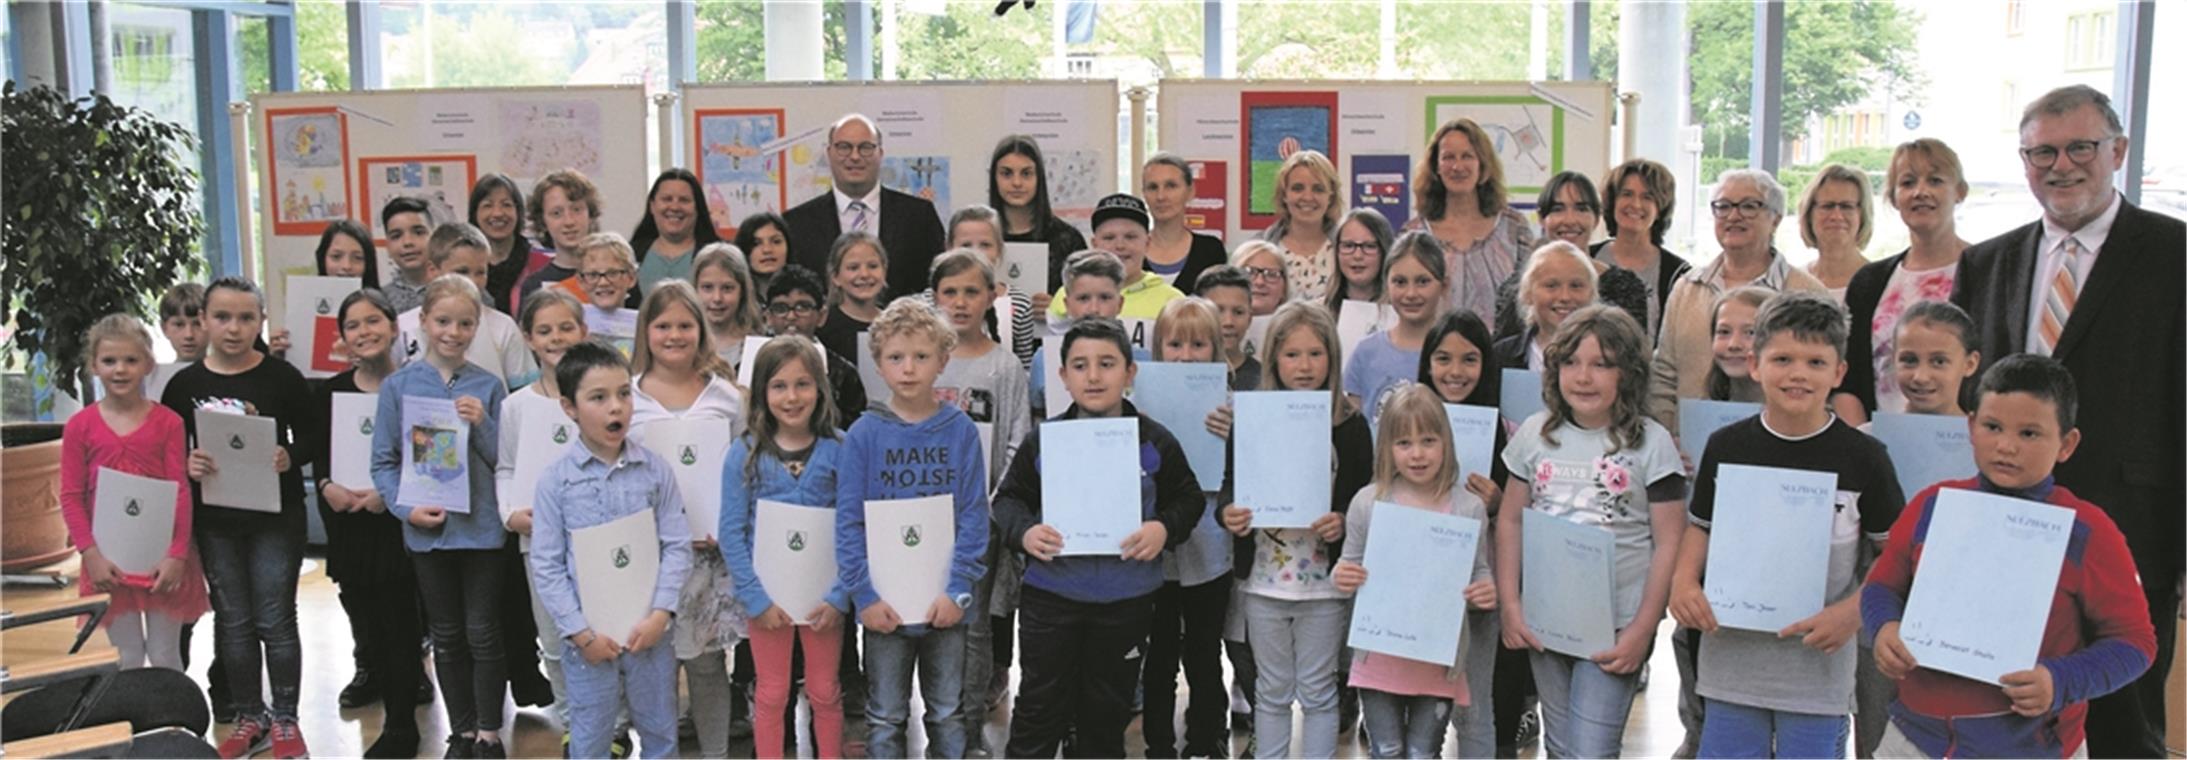 Die versammelte Runde der gut gelaunten Preisträger: Die Schüler mit ihren Lehrerinnen sowie Bürgermeister Dieter Zahn (rechts) und Bürgermeister Armin Mößner (hintere Reihe). Foto: E. Klaper